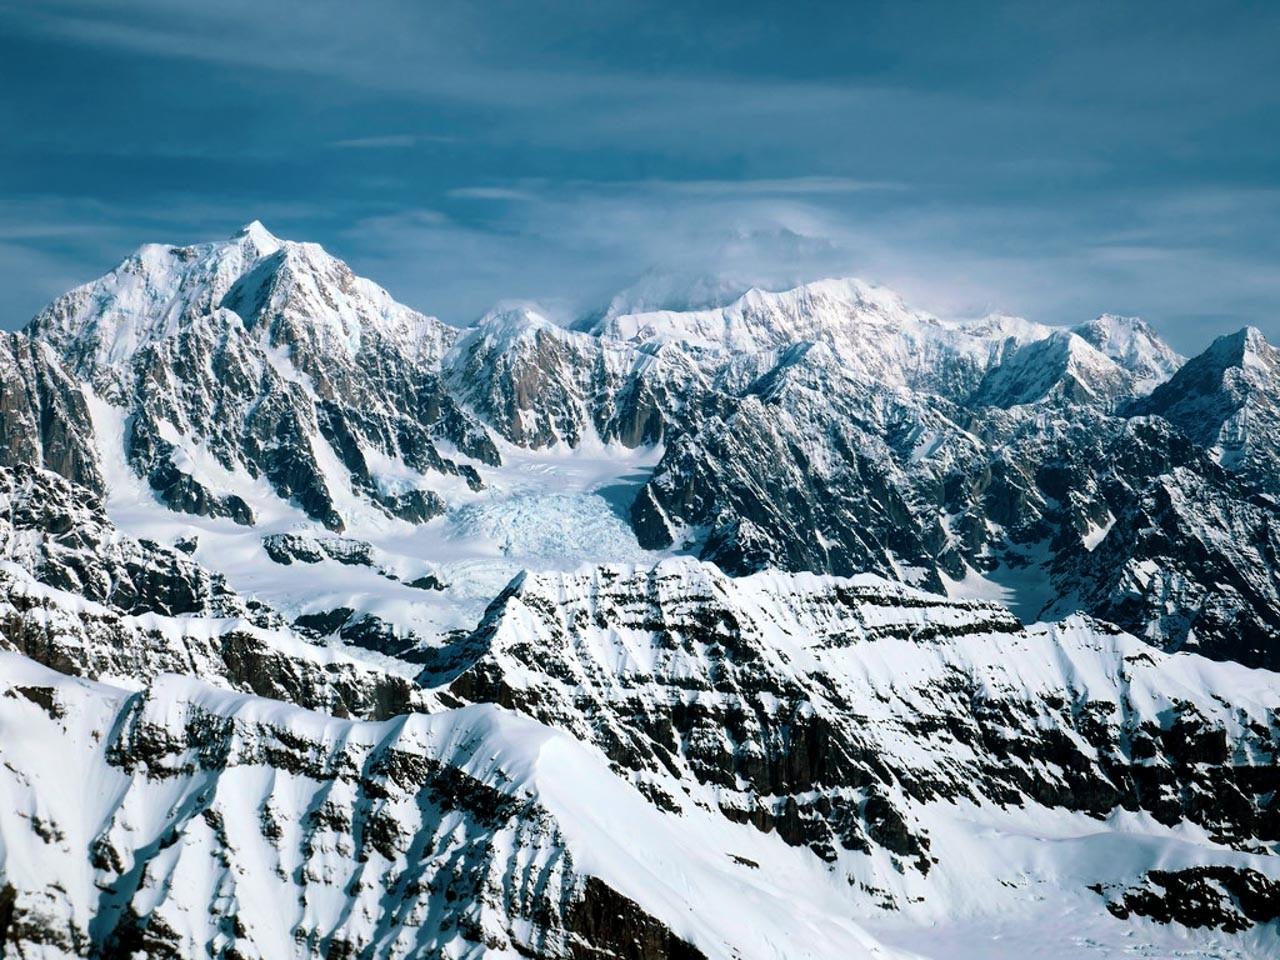 The dangerous journey of K2